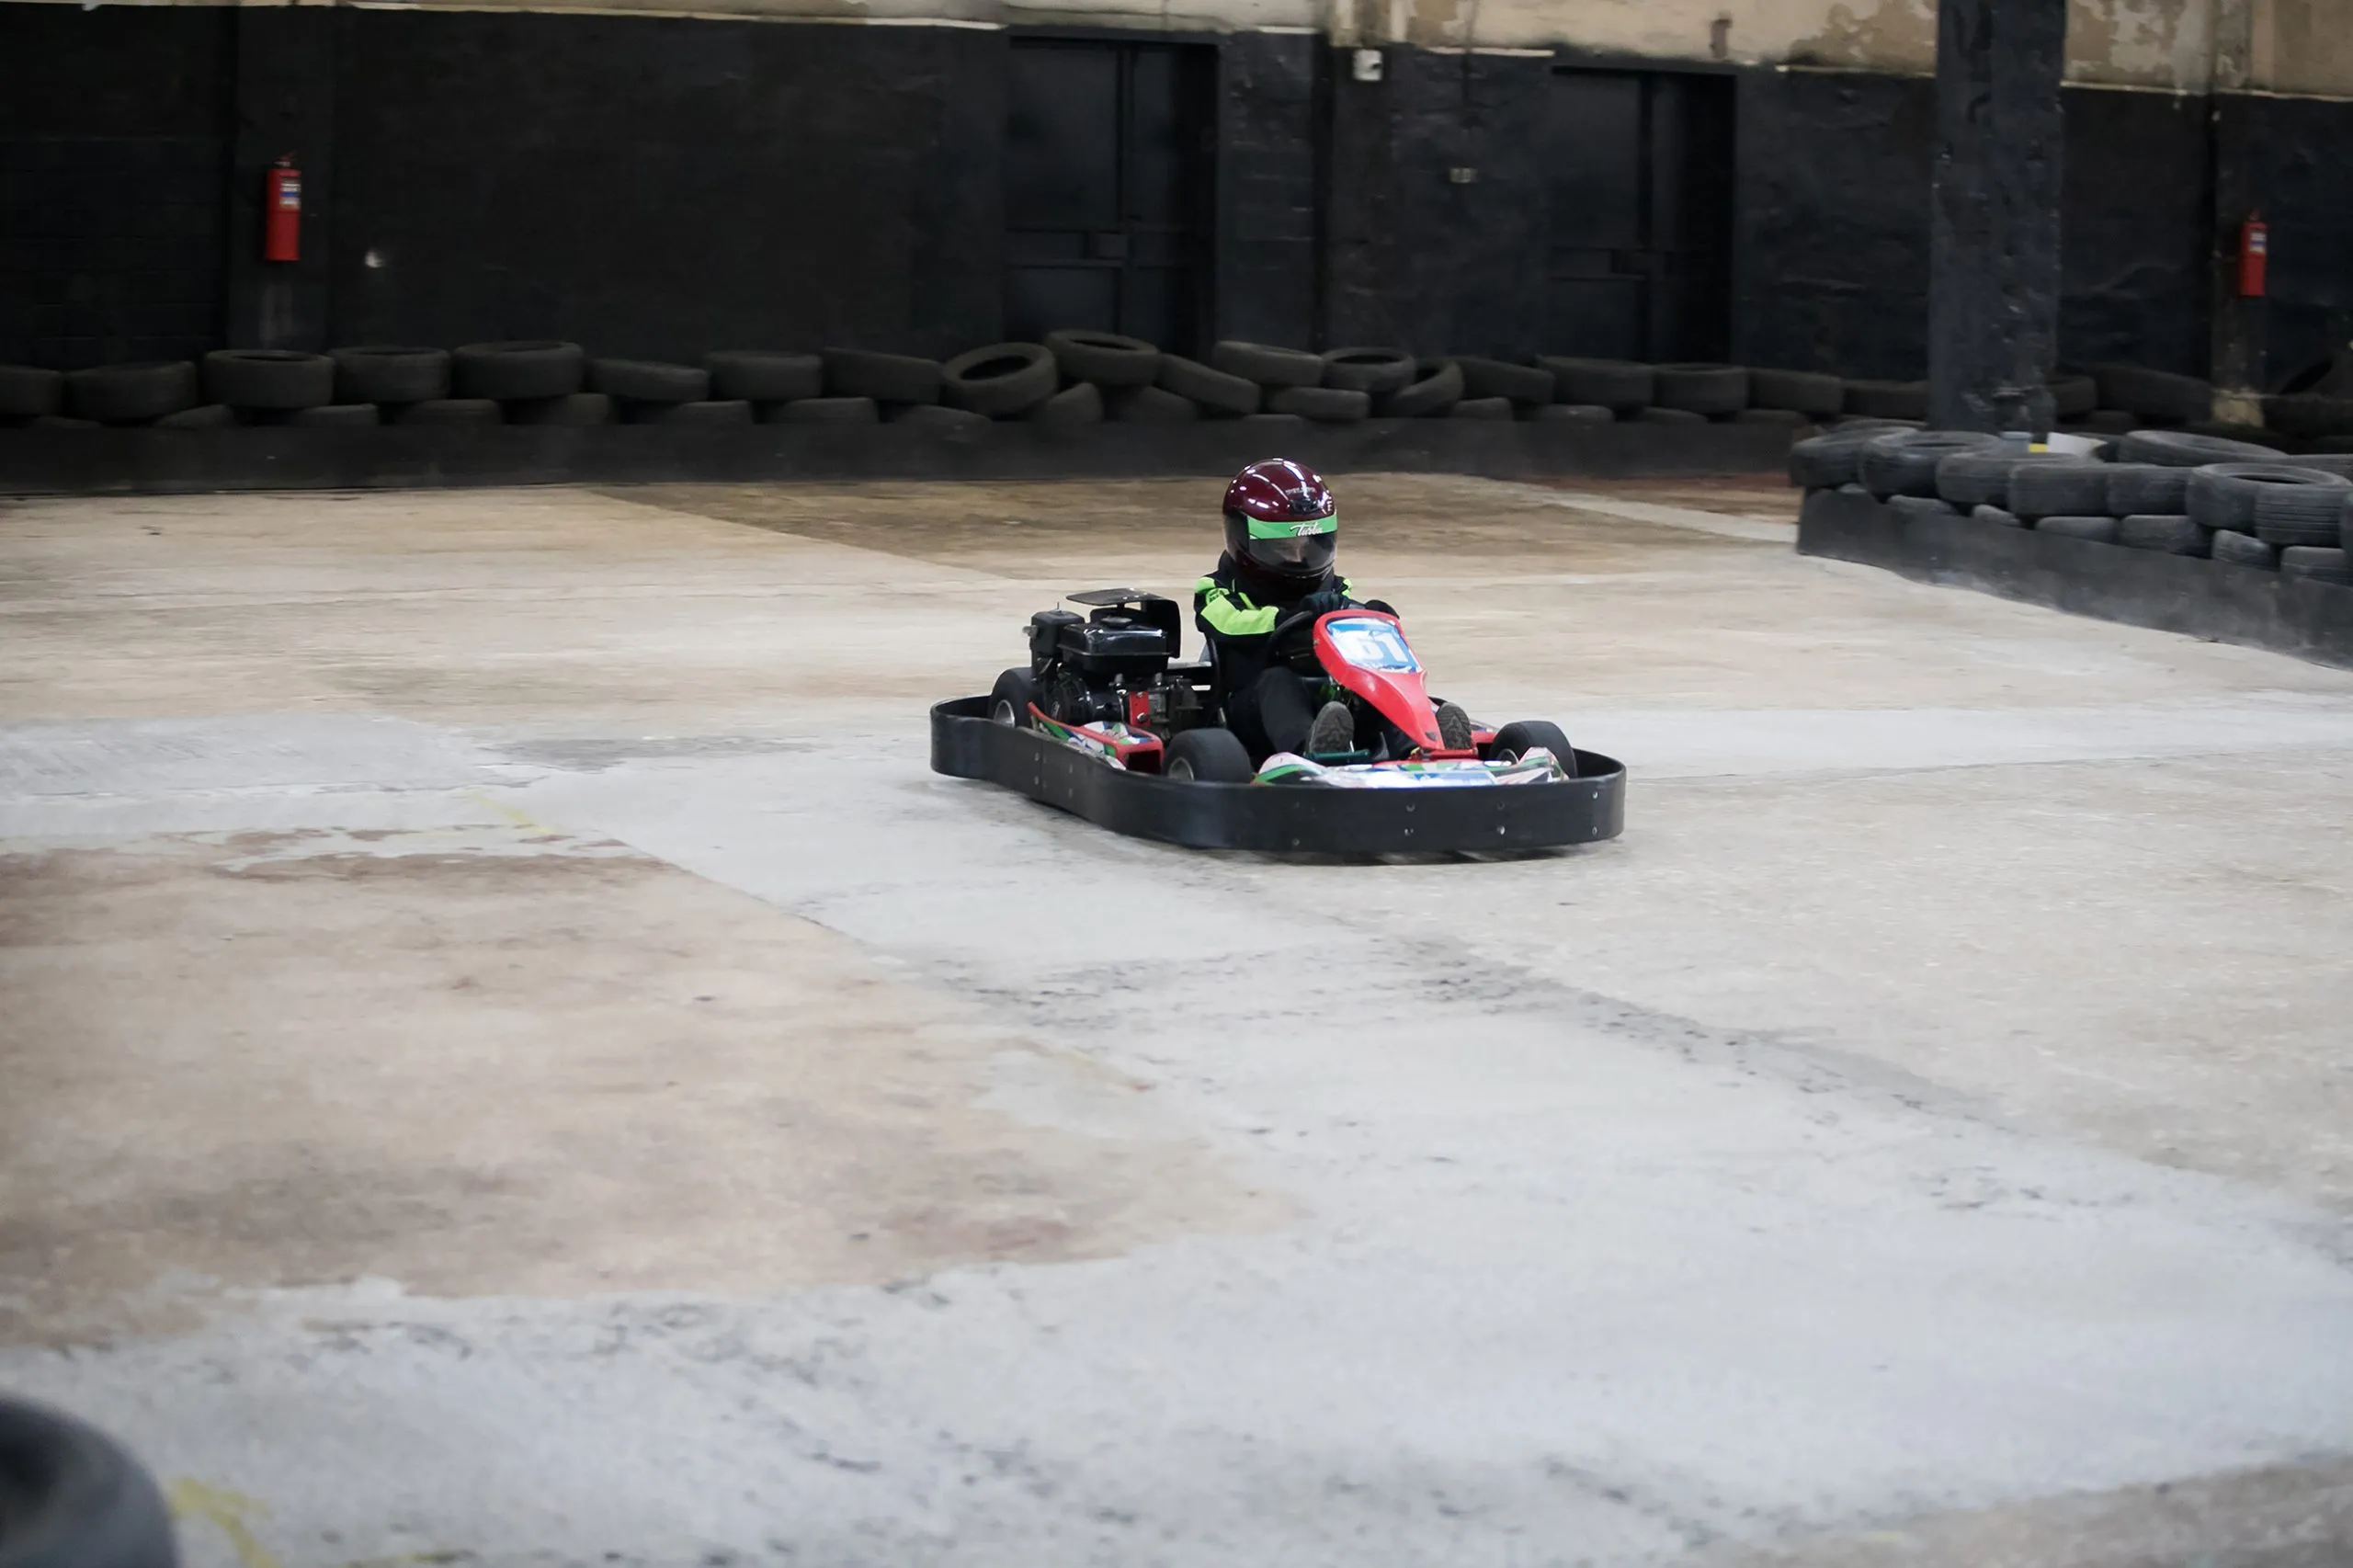 Campionato di karting. Piloti in kart con casco e tuta da corsa partecipano alla gara di kart. Spettacolo di karting. Bambini e adulti che gareggiano in kart.